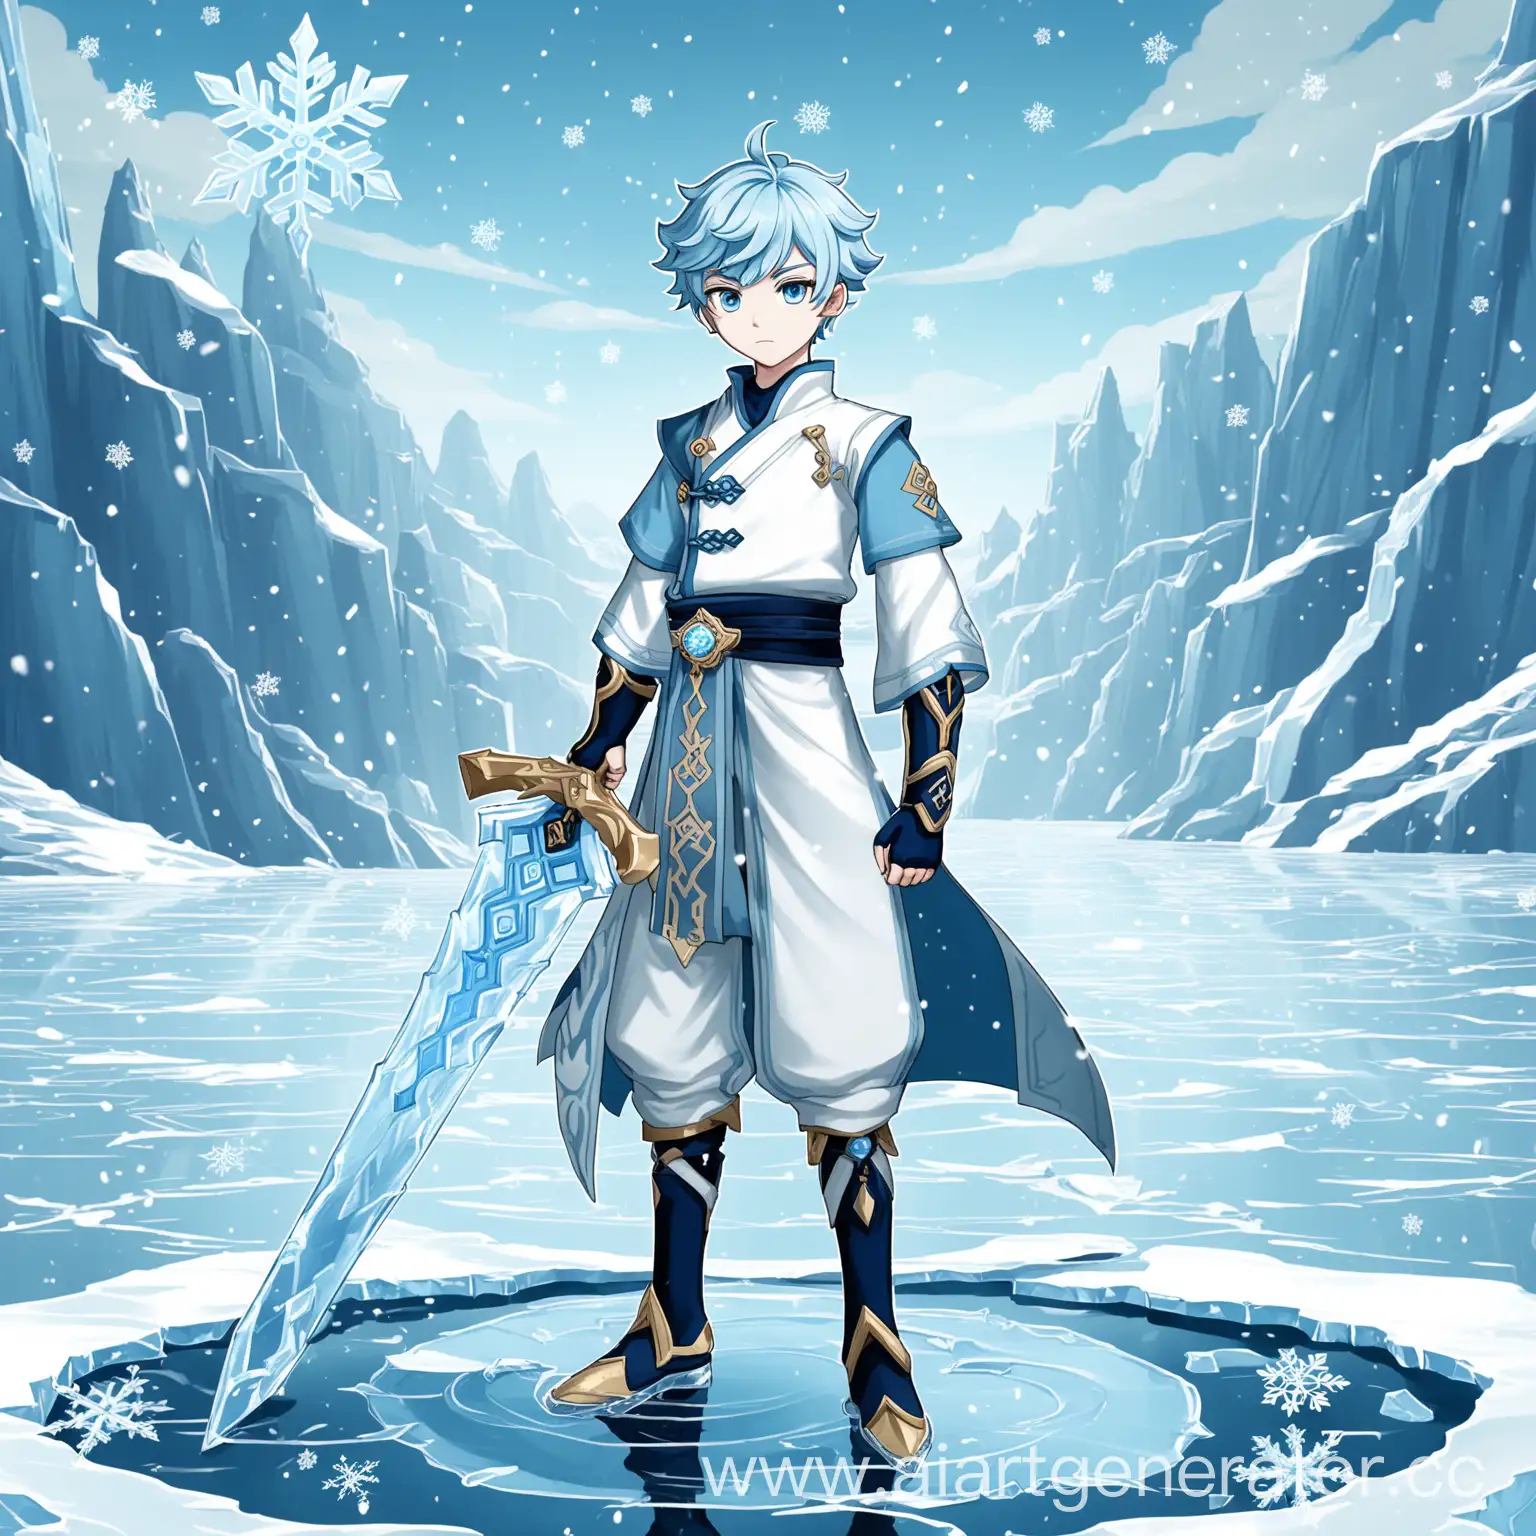 Chongyun from genshin impact, Chongyun, genshin impact, anime boy, голубые волосы, длинные волосы, голубые глаза, двуручный меч, стоит посреди озера на льду, лёд, снежинки